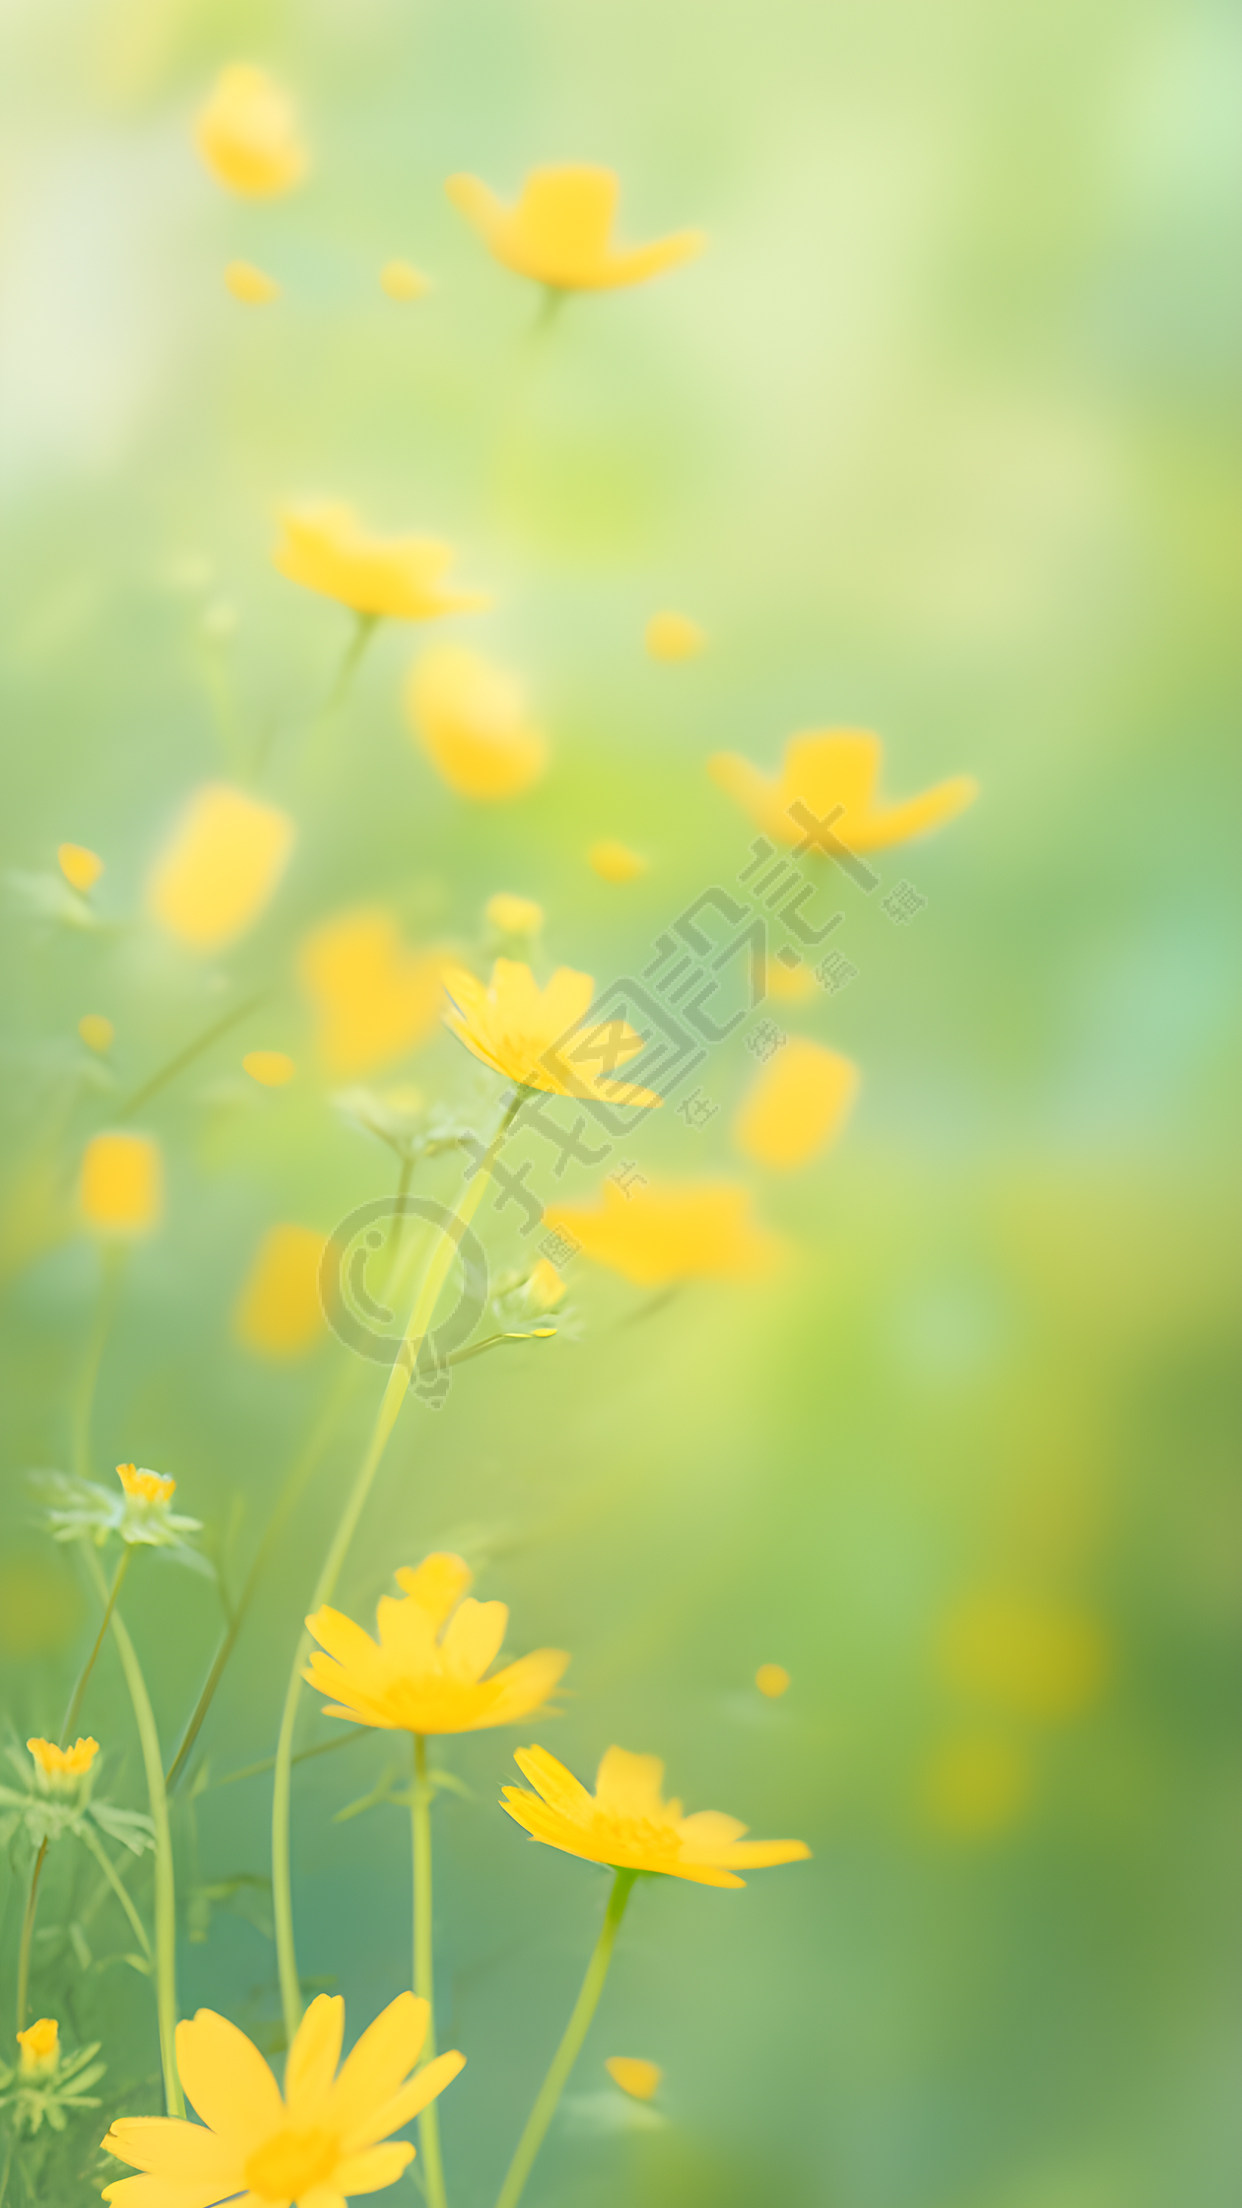 欣欣向荣的黄色小花背景